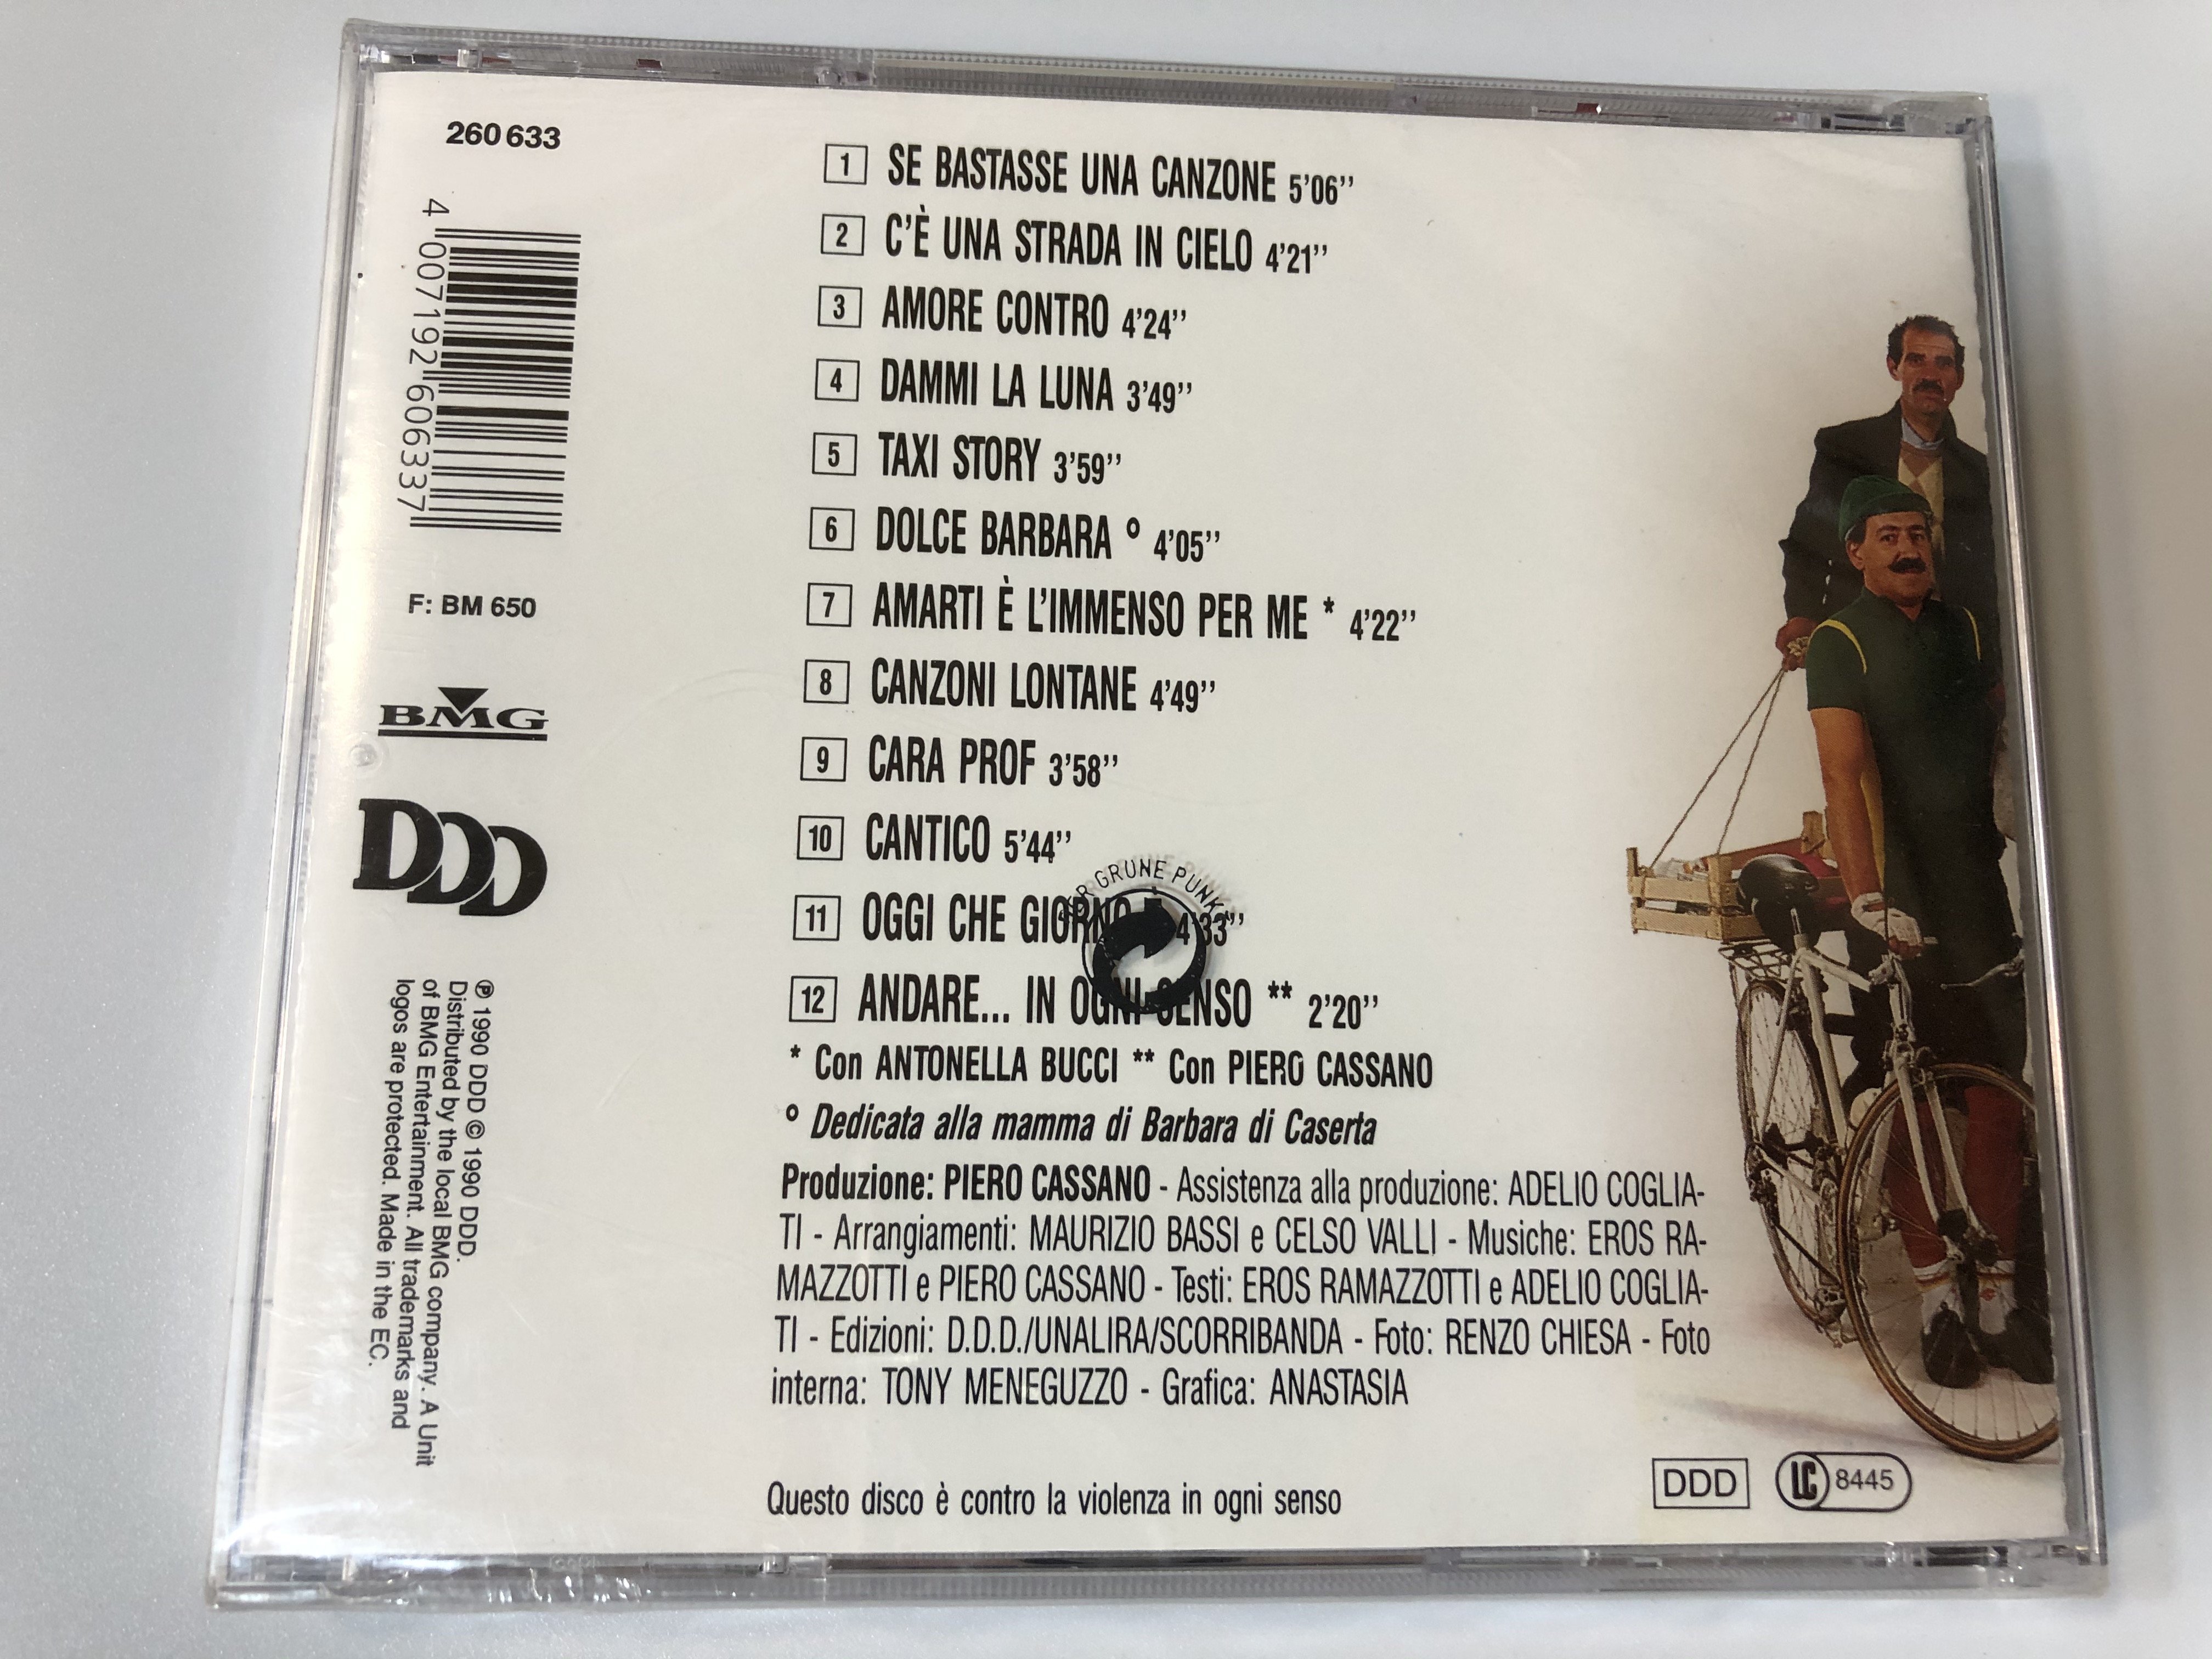 eros-ramazzotti-in-ogni-senso-ddd-audio-cd-1990-260-633-2-.jpg